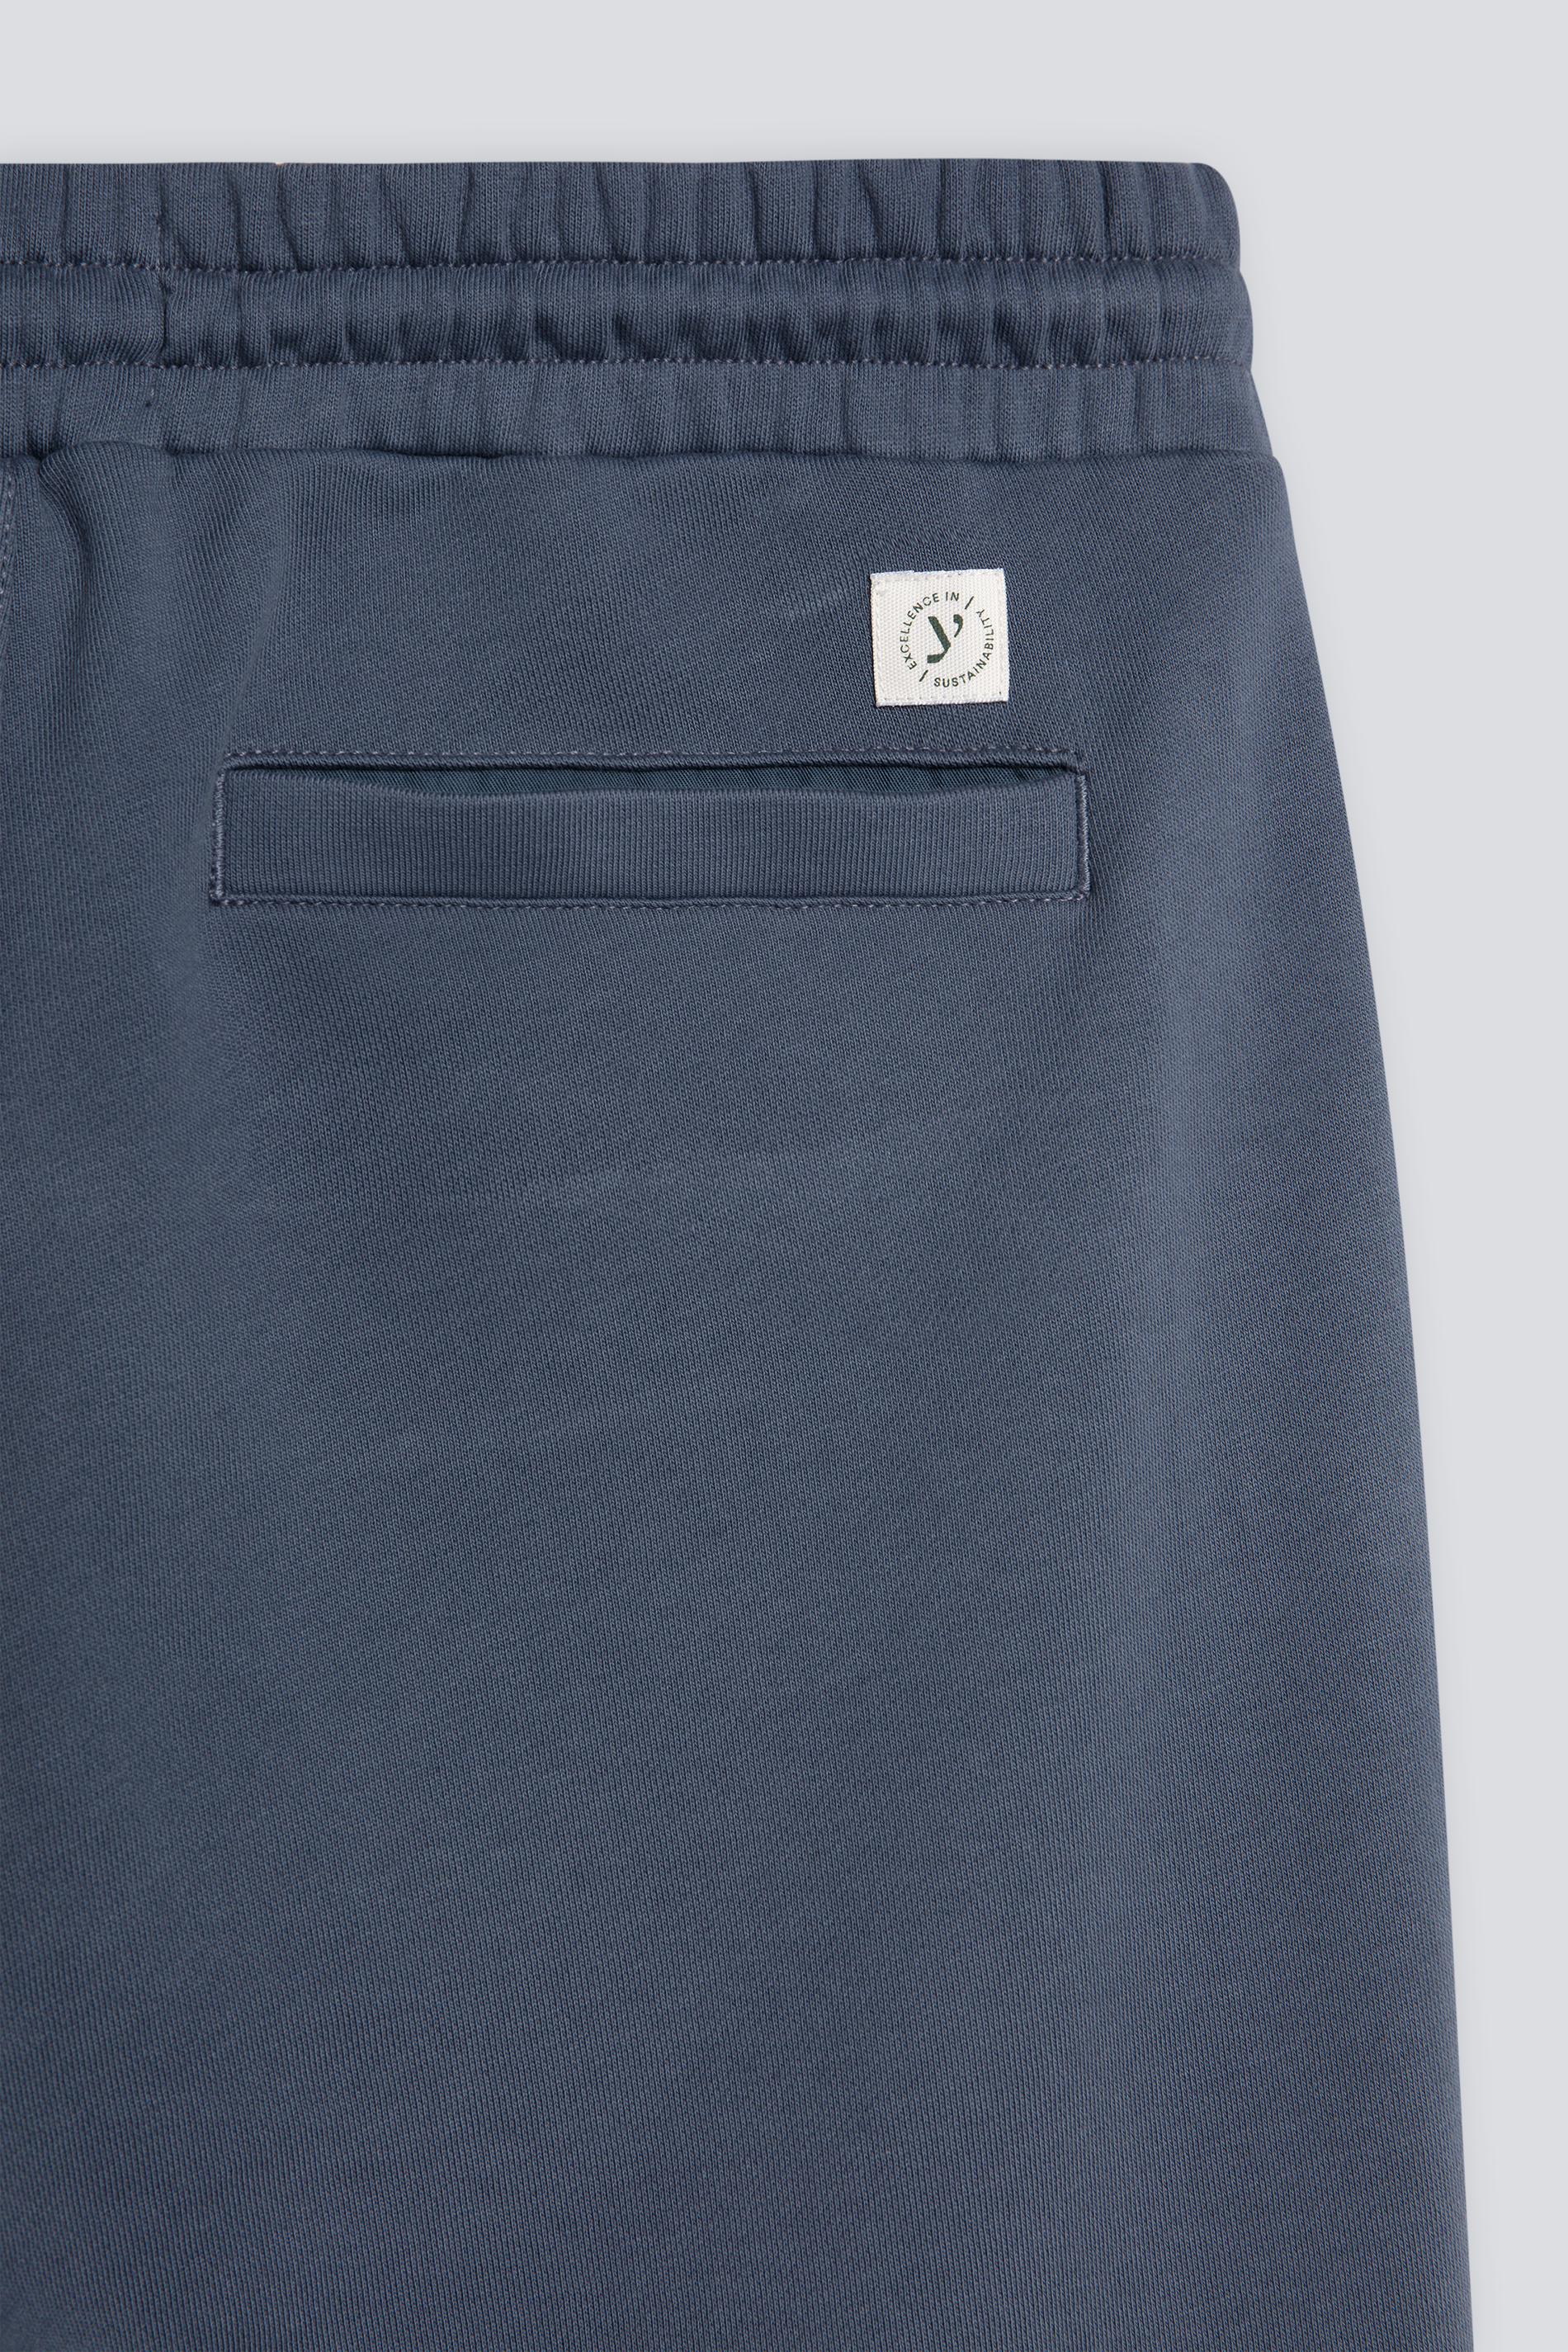 Sweat Pants Serie Felpa Cotone Detailansicht 01 | mey®